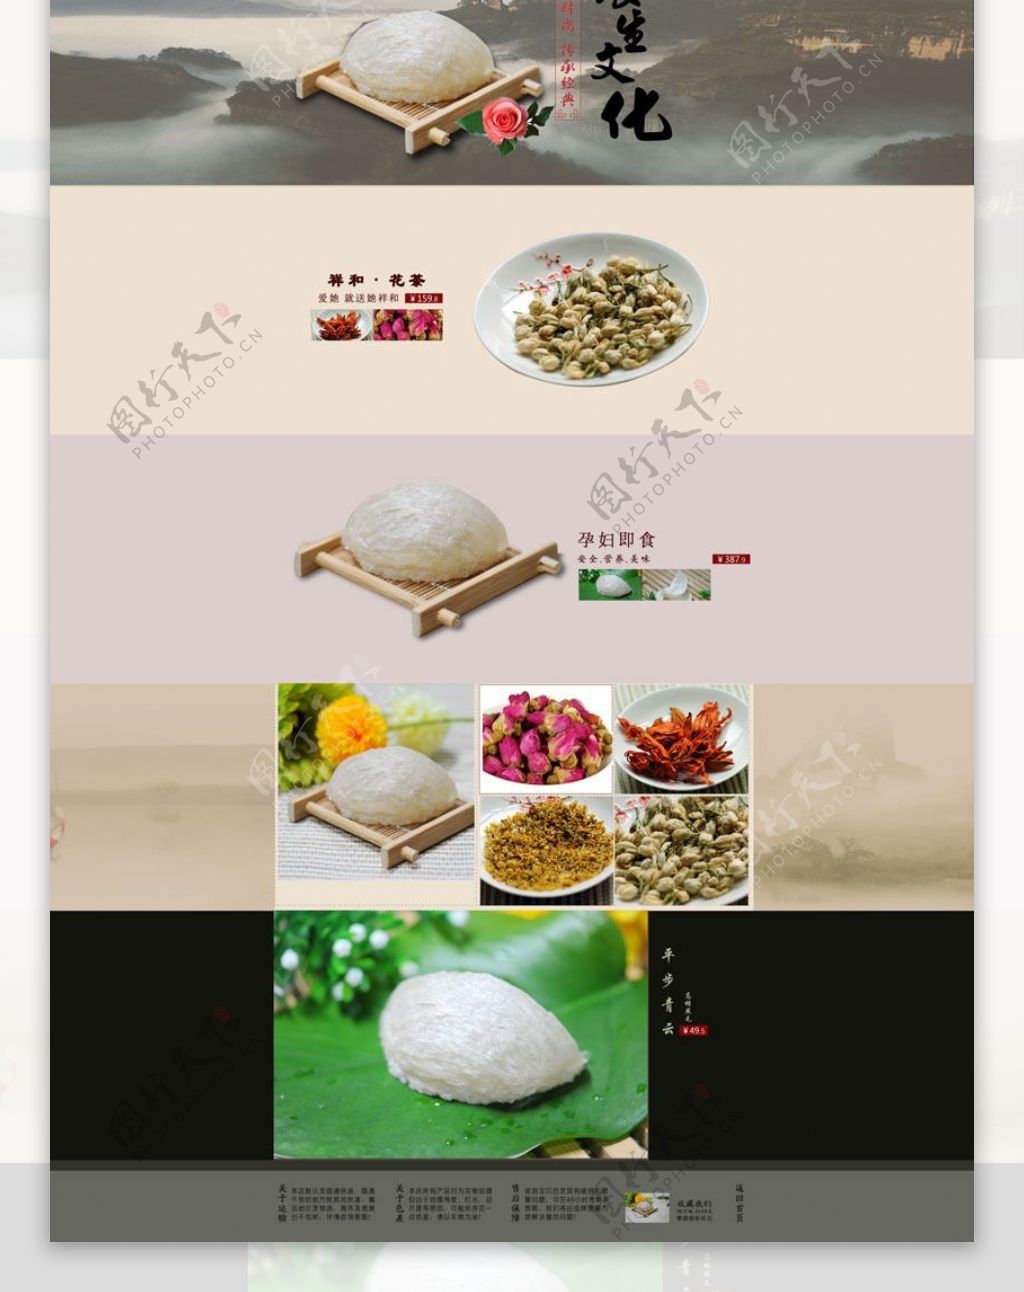 淘宝大米促销页面设计PSD素材